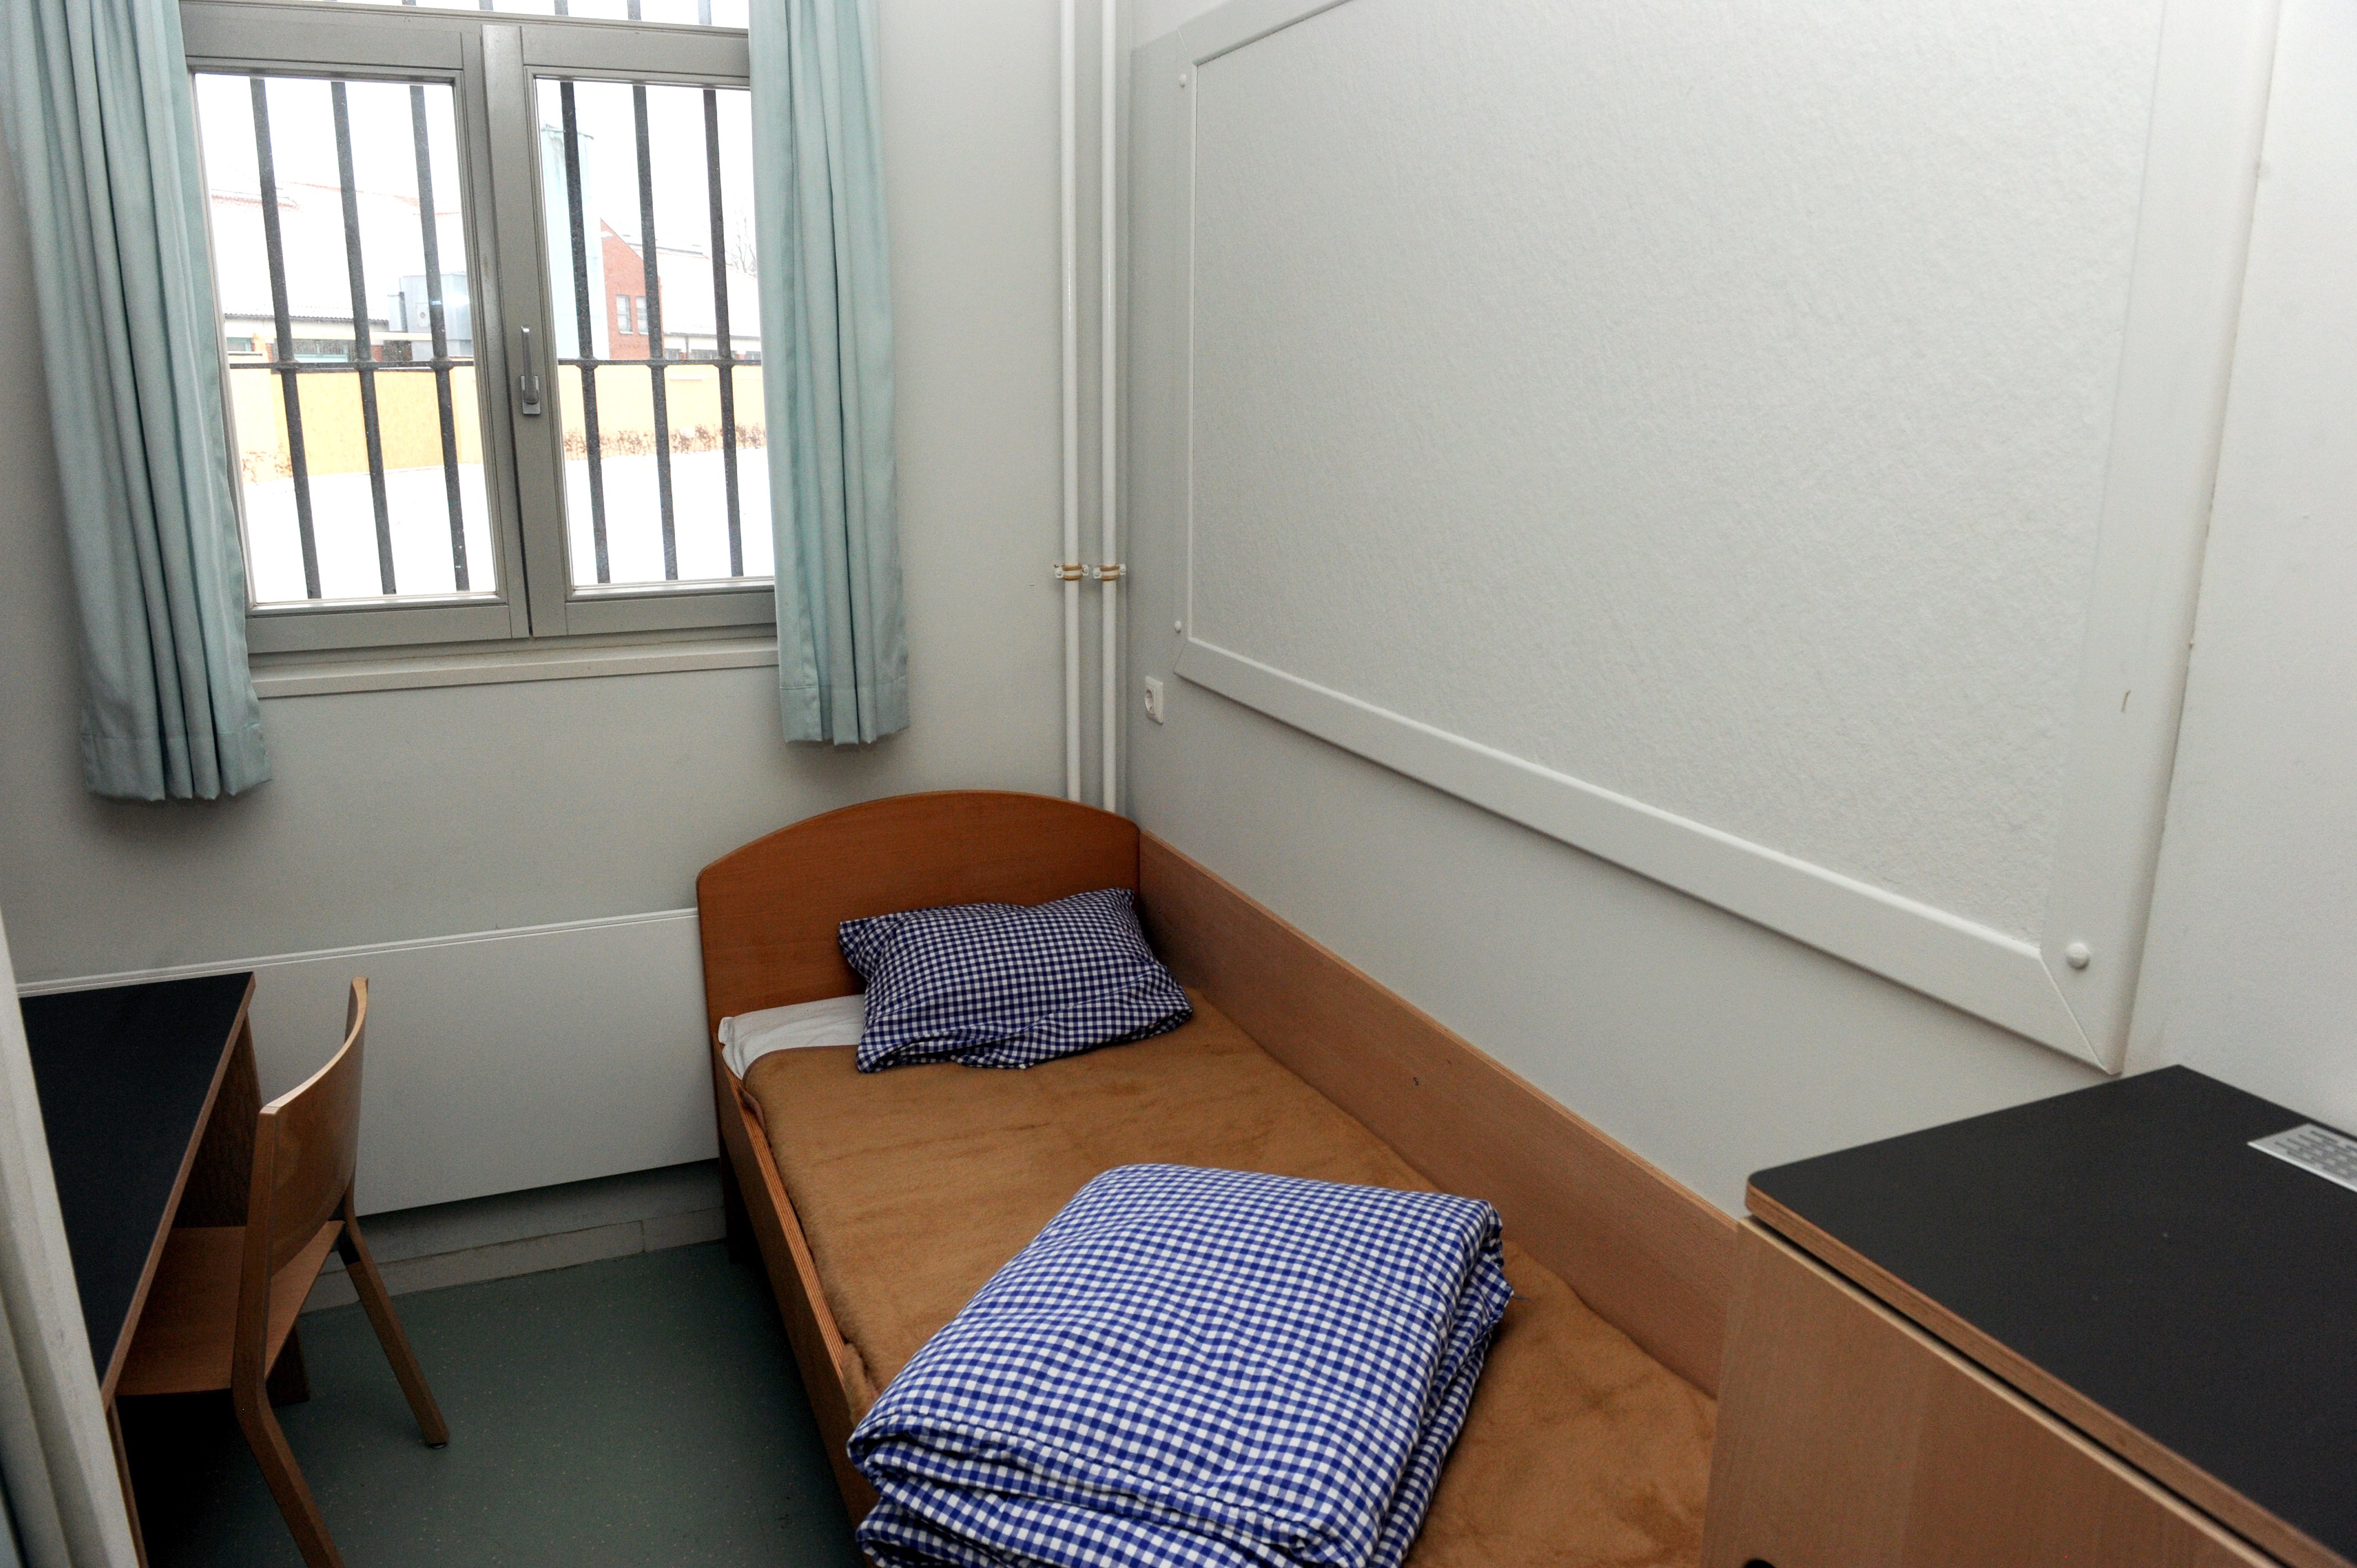 Los presos de Neumünster lo tienen claro: "Puigdemont no debería estar aquí"